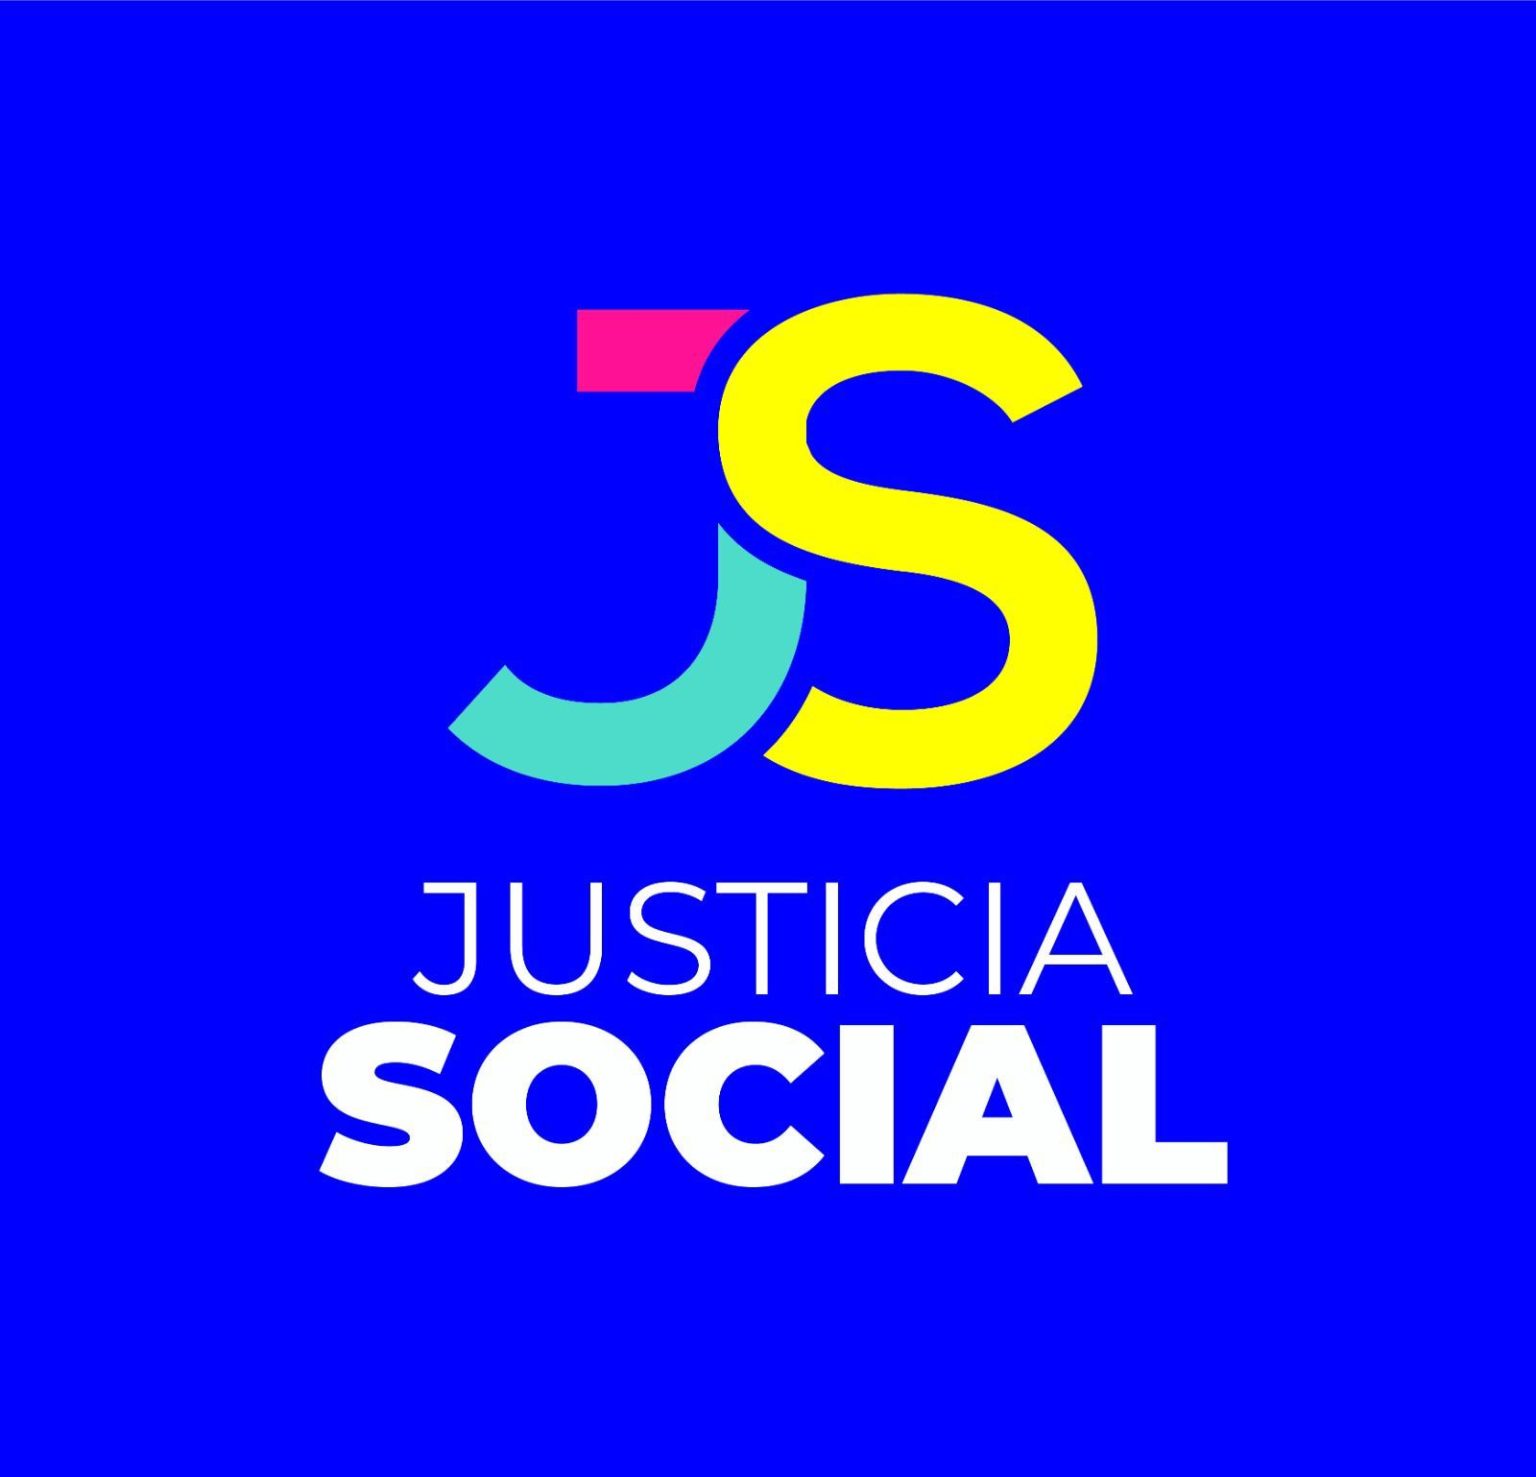 Justicia Social es reconocido como partido